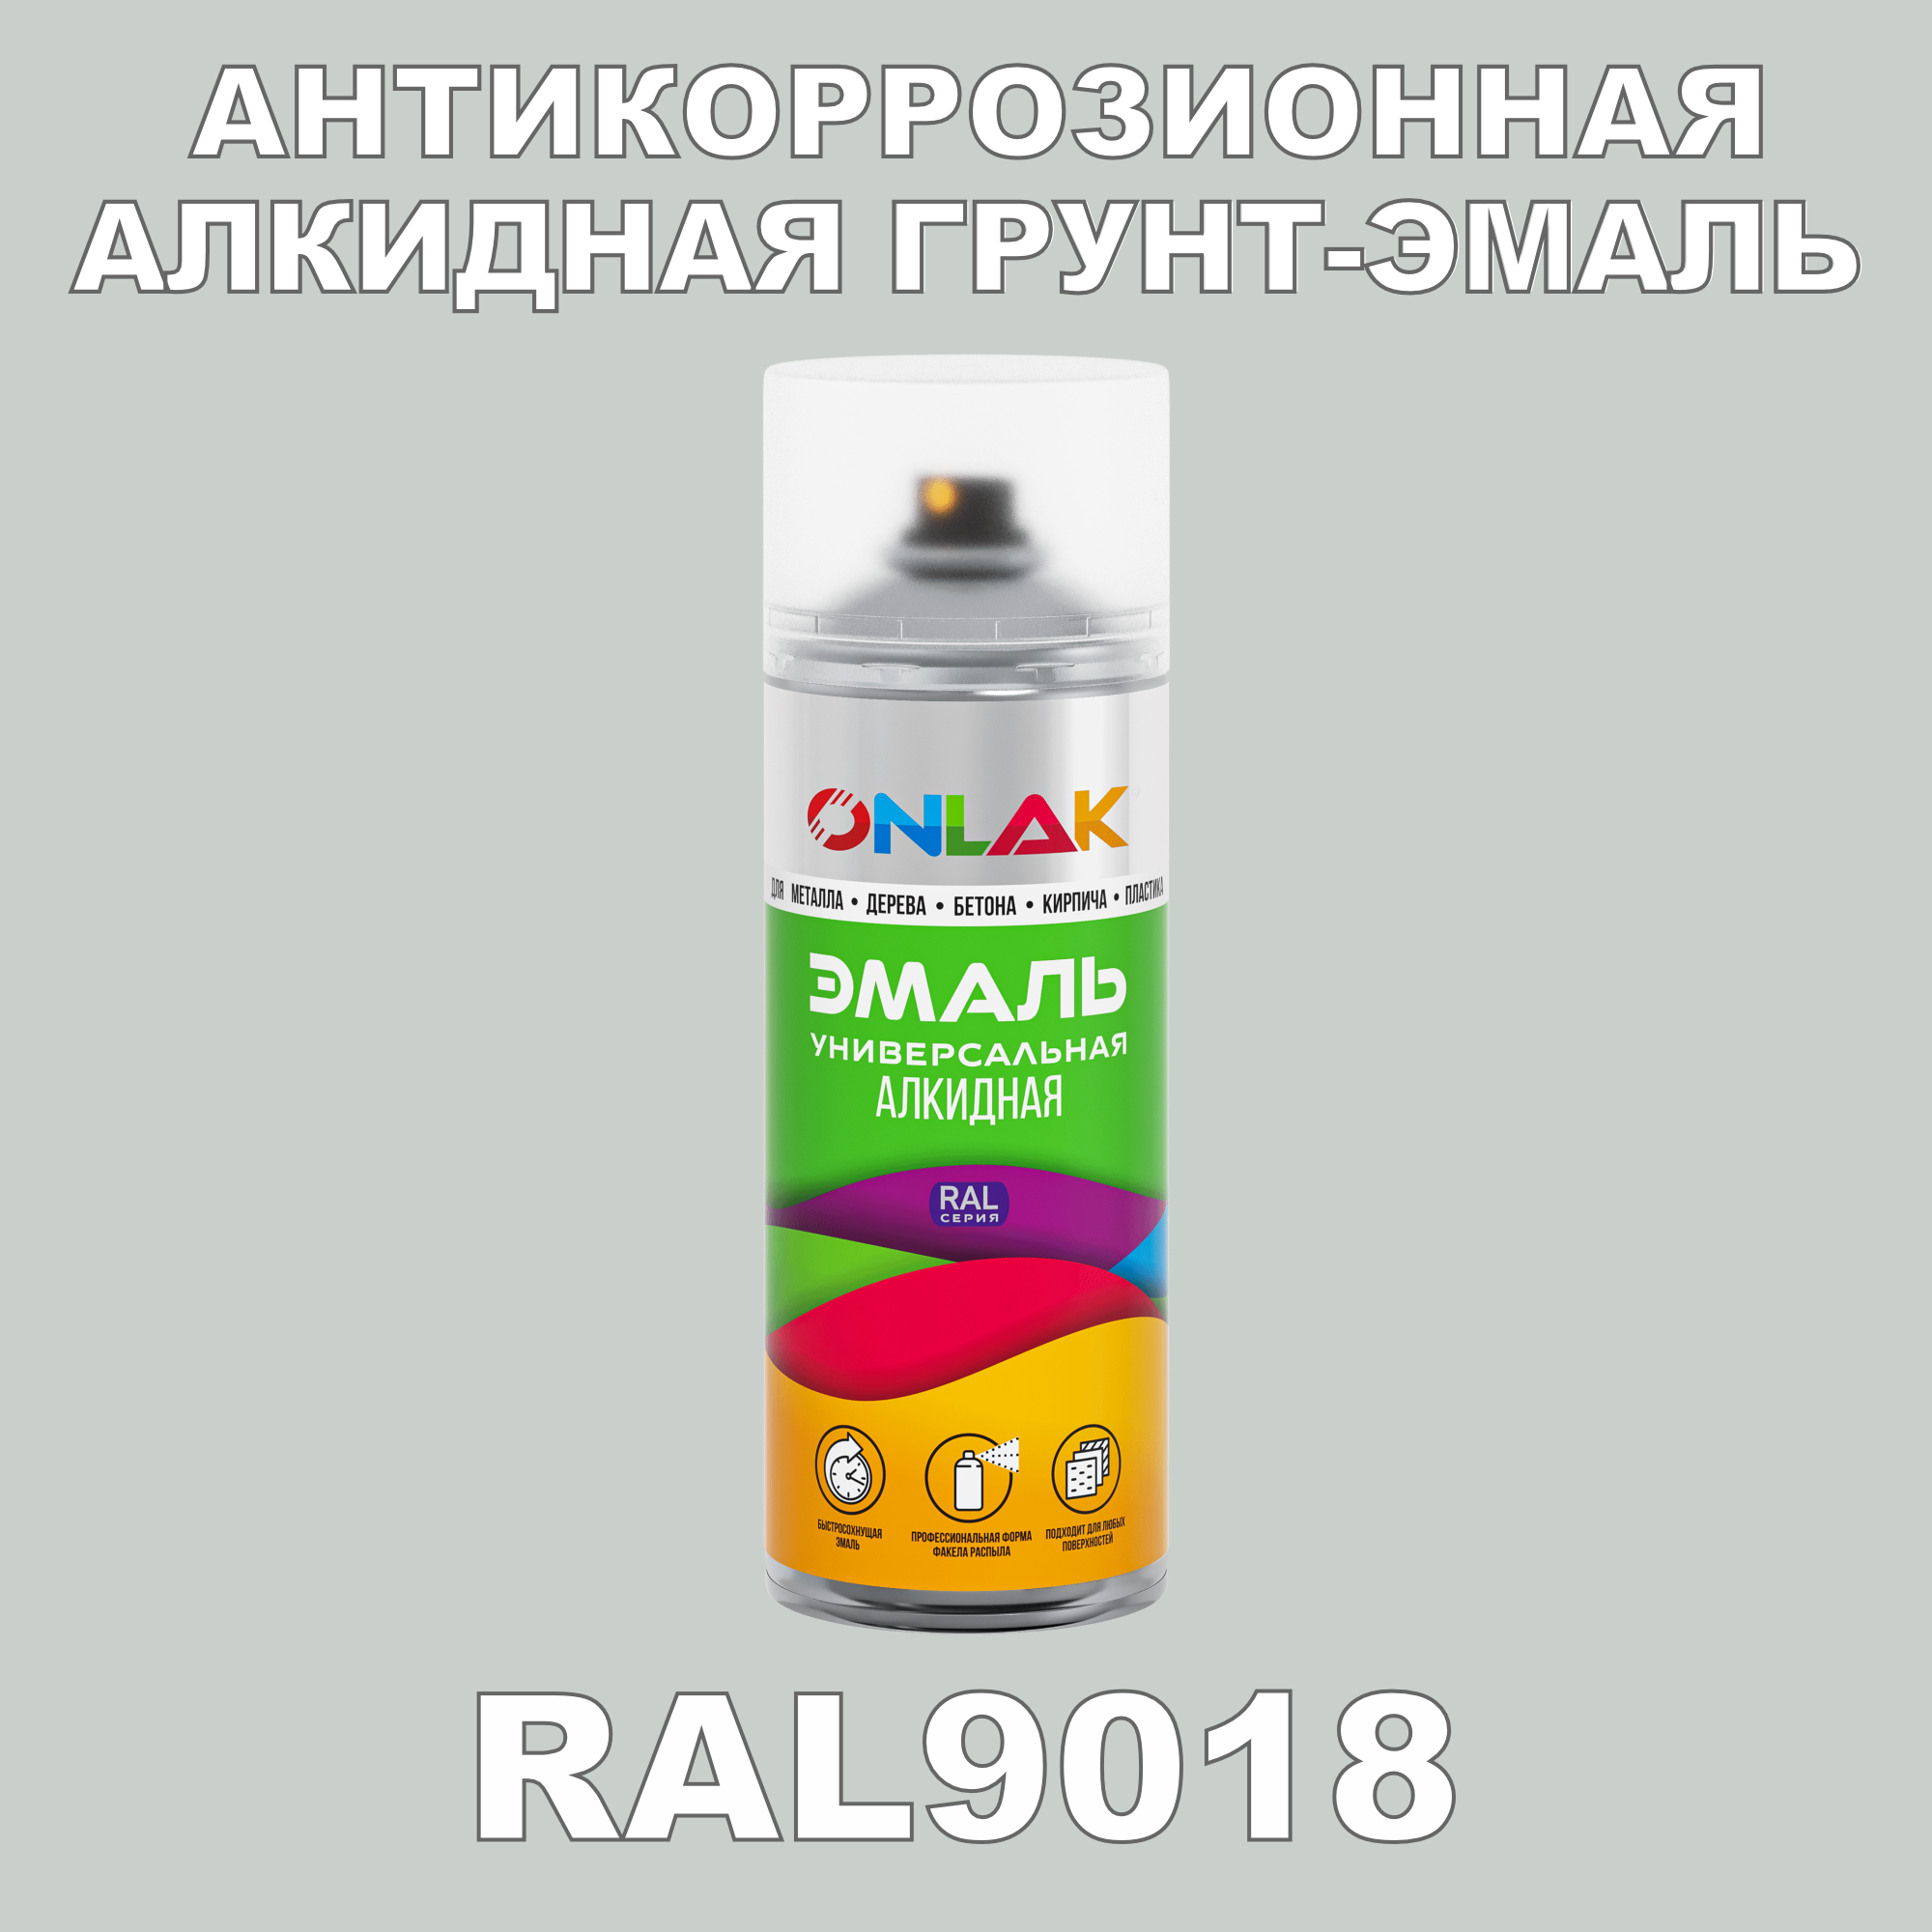 Антикоррозионная грунт-эмаль ONLAK RAL9018 полуматовая для металла и защиты от ржавчины